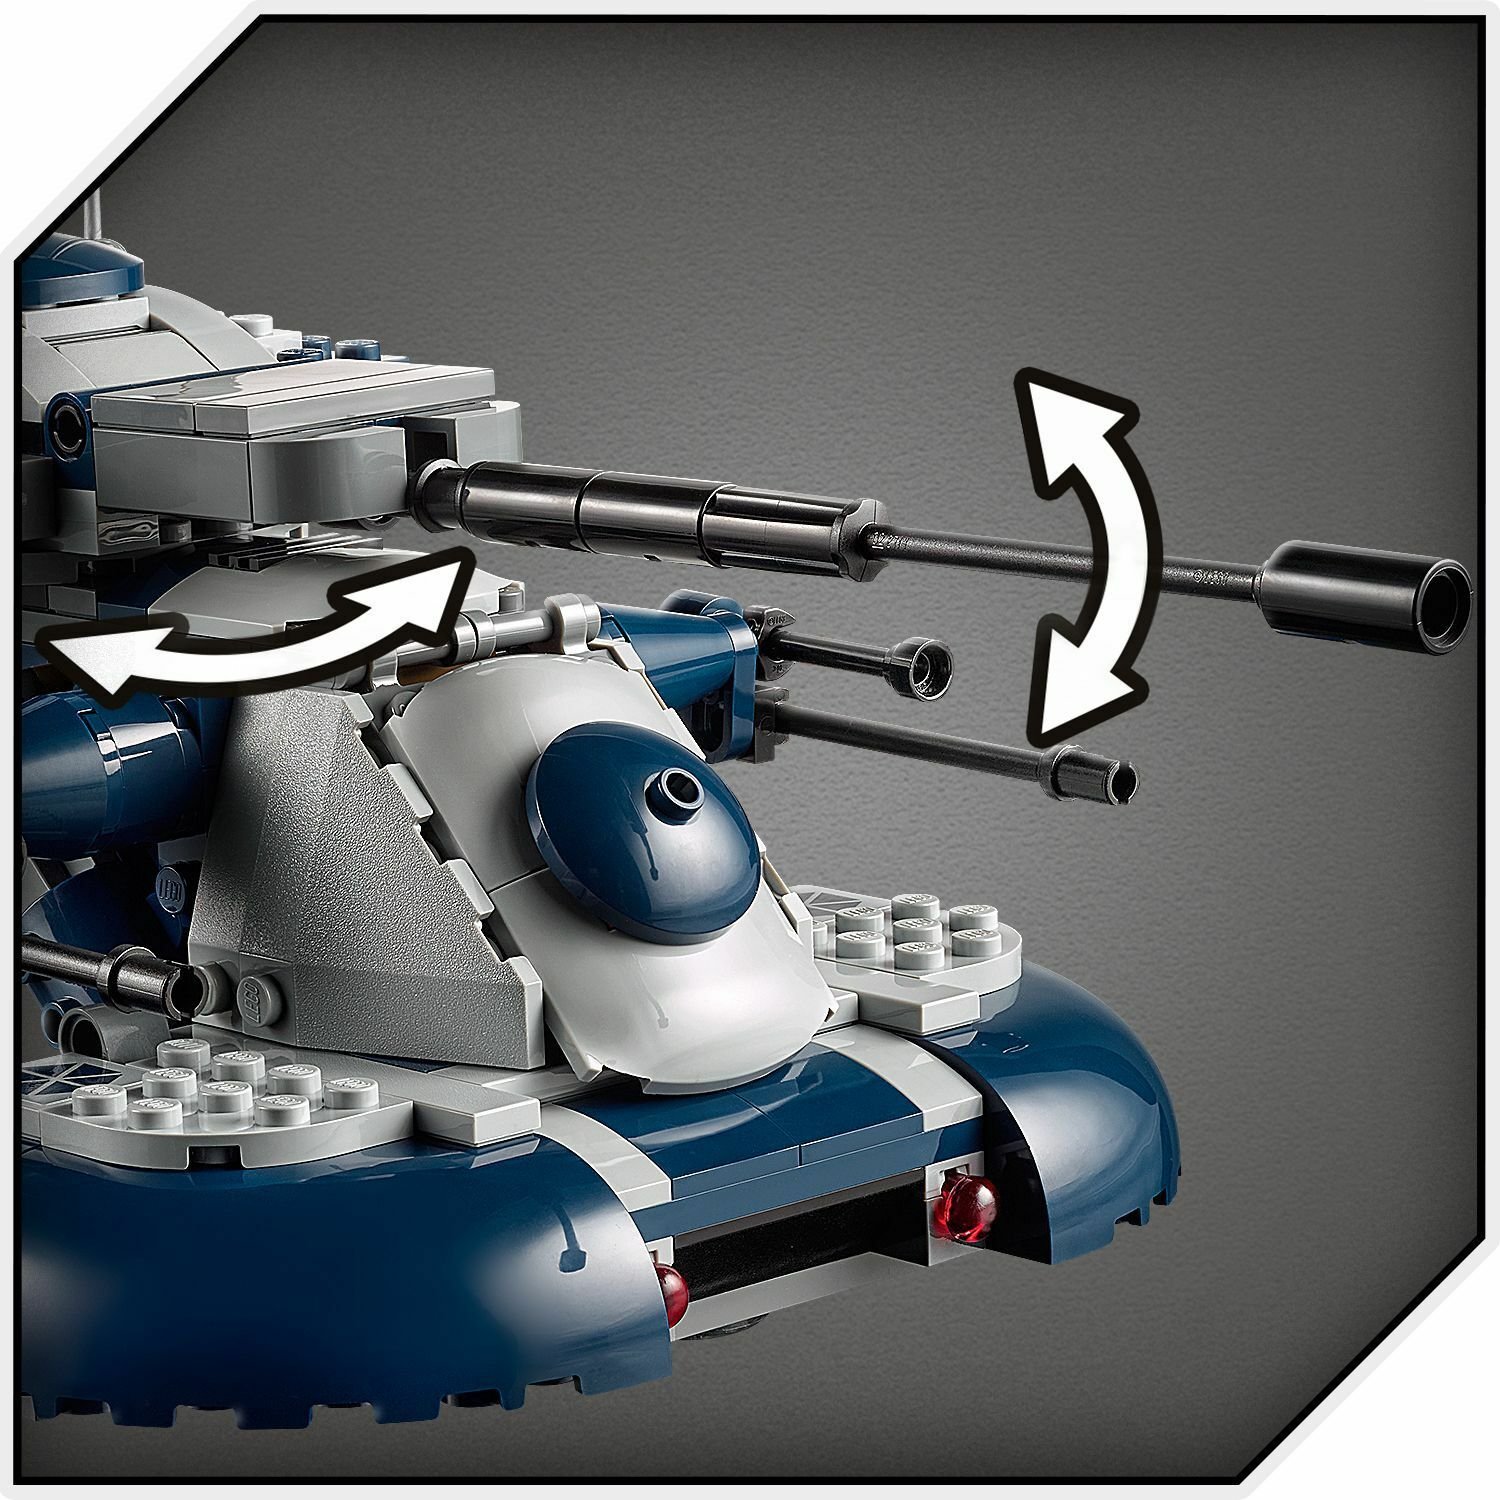 Lego Star Wars 75283 Бронированный штурмовой танк (AAT™)